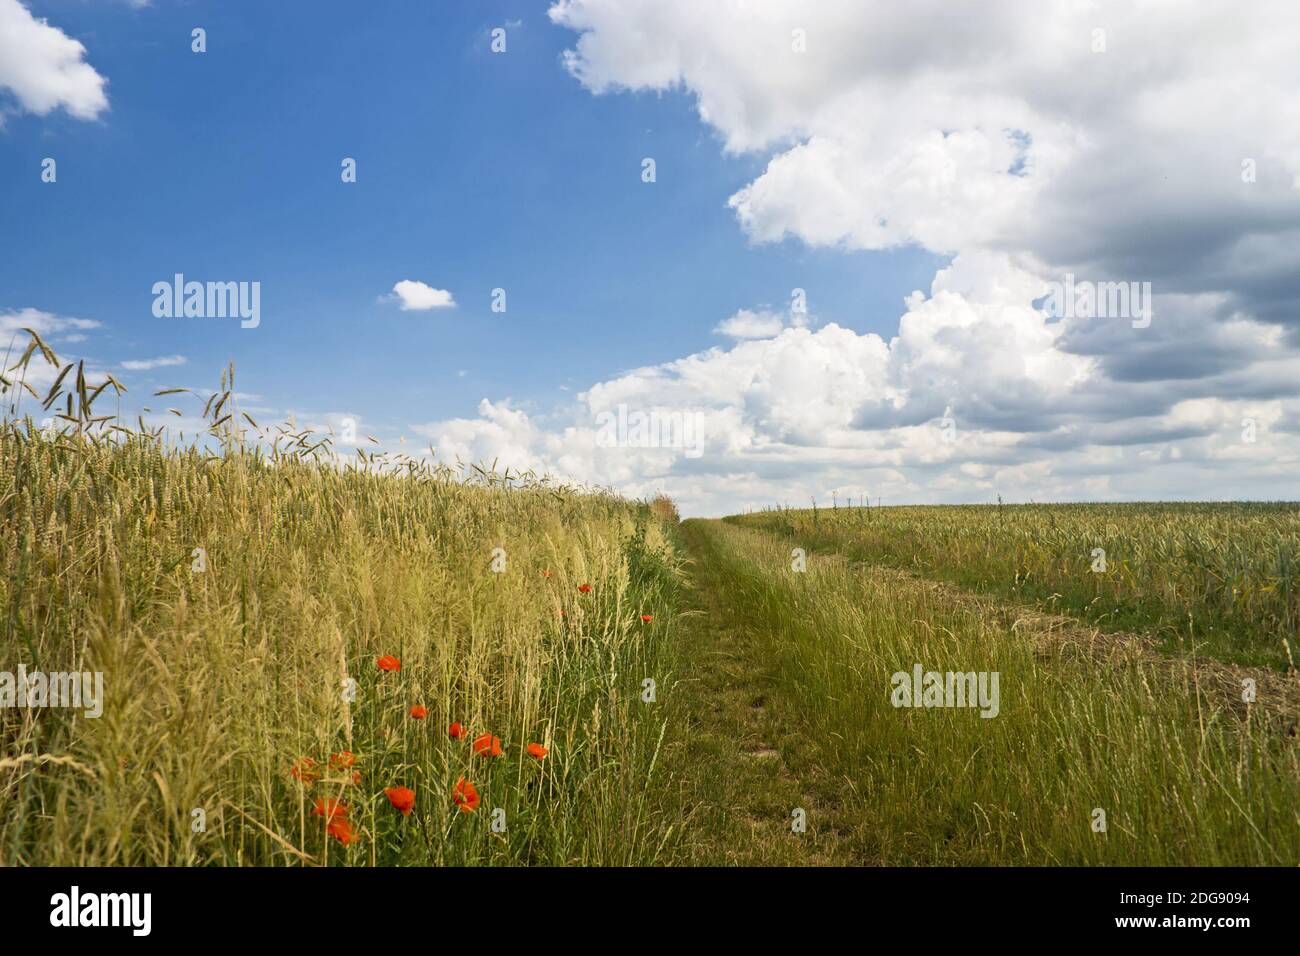 Field path between grain fields Stock Photo